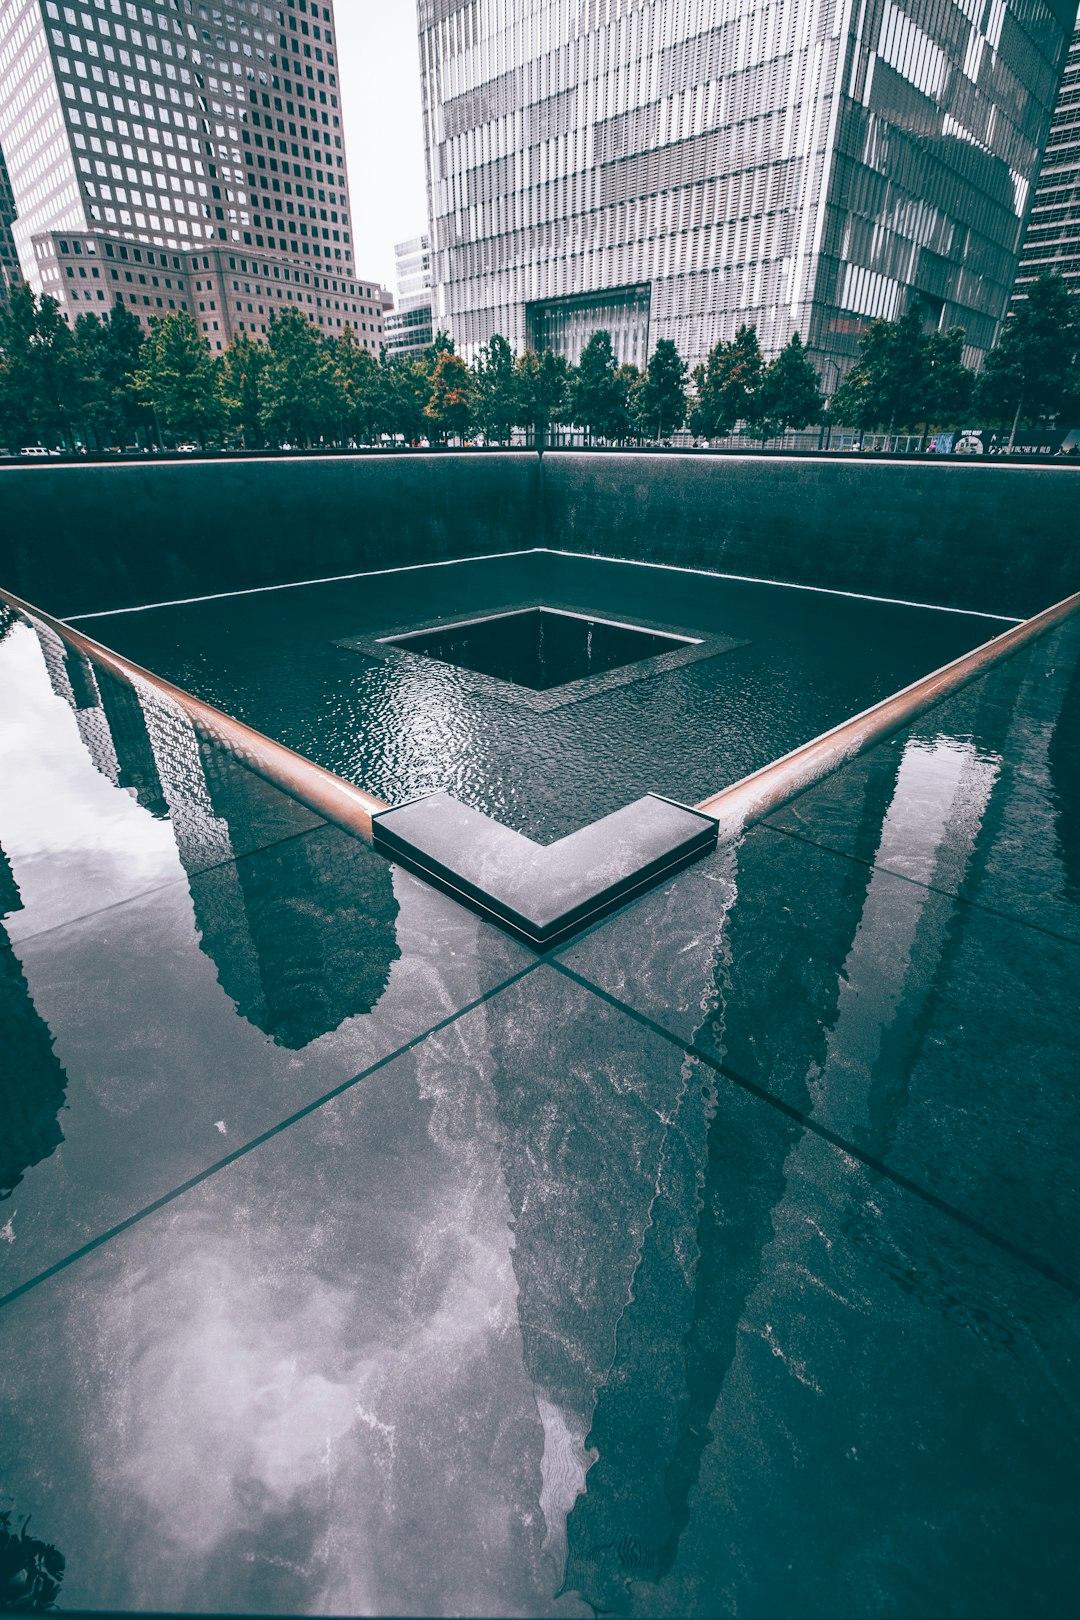 National September 11 Memorial & Museum (by Darshan Patel)